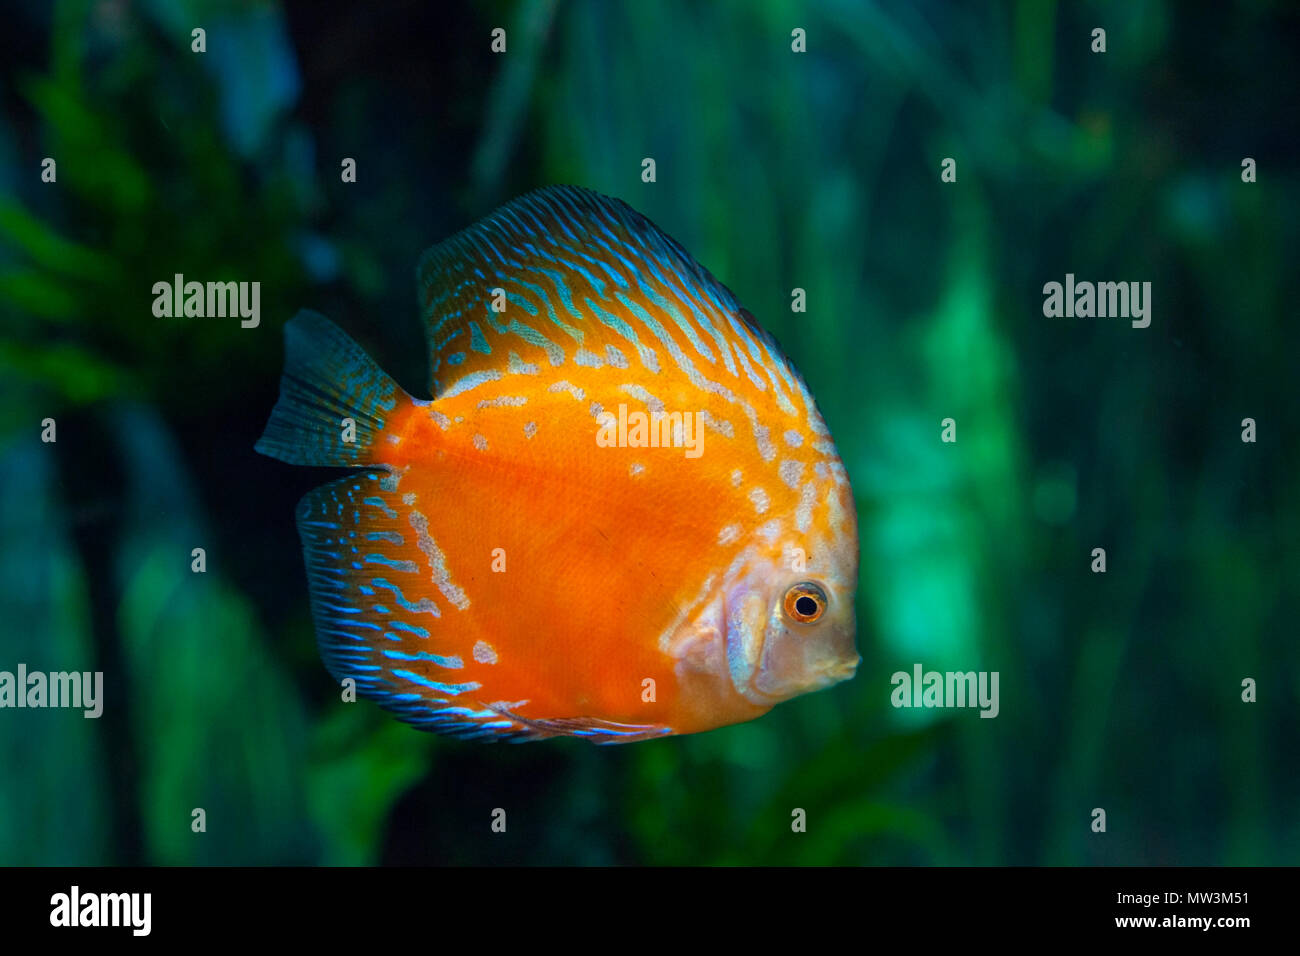 exotic aquarium background  with orange and blue discus fish Stock Photo